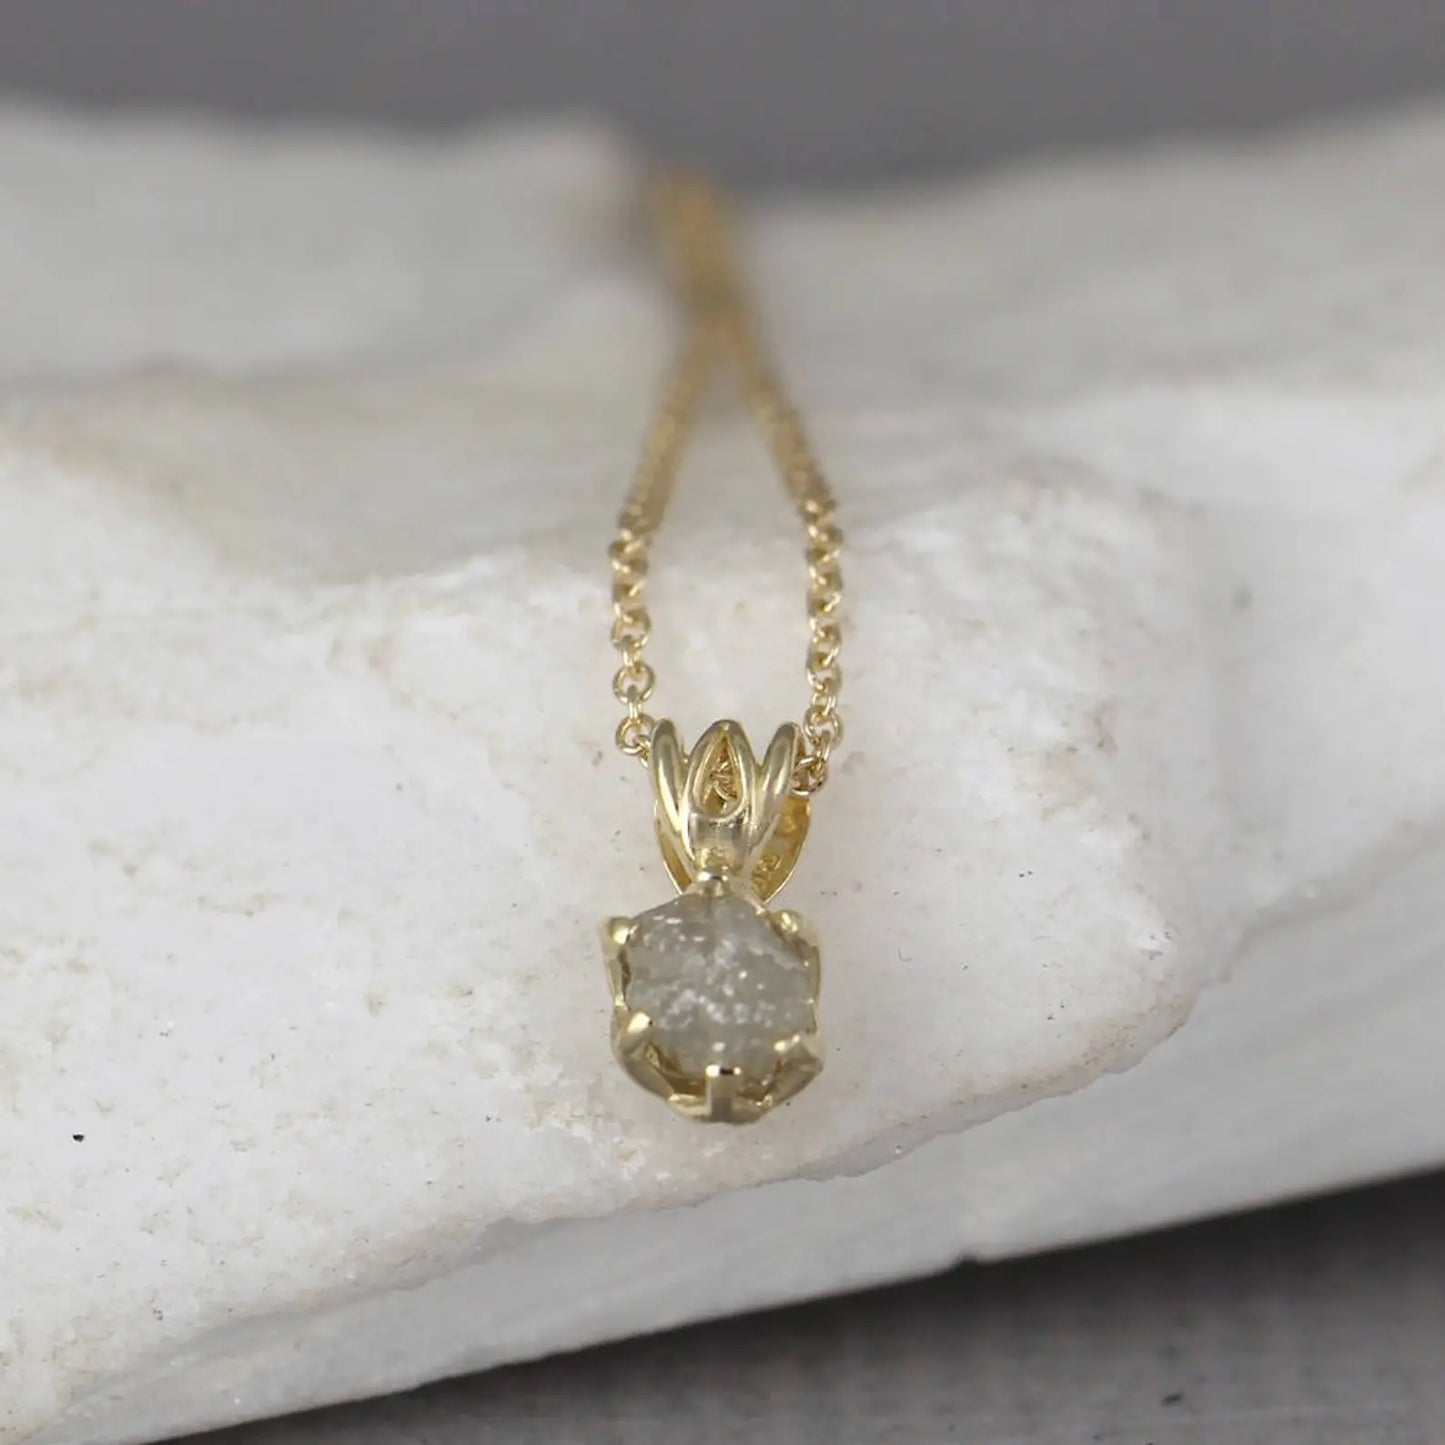 14K Yellow Gold Uncut Diamond Pendant - Filigree Style - 1/2 Carat Raw Uncut Diamond